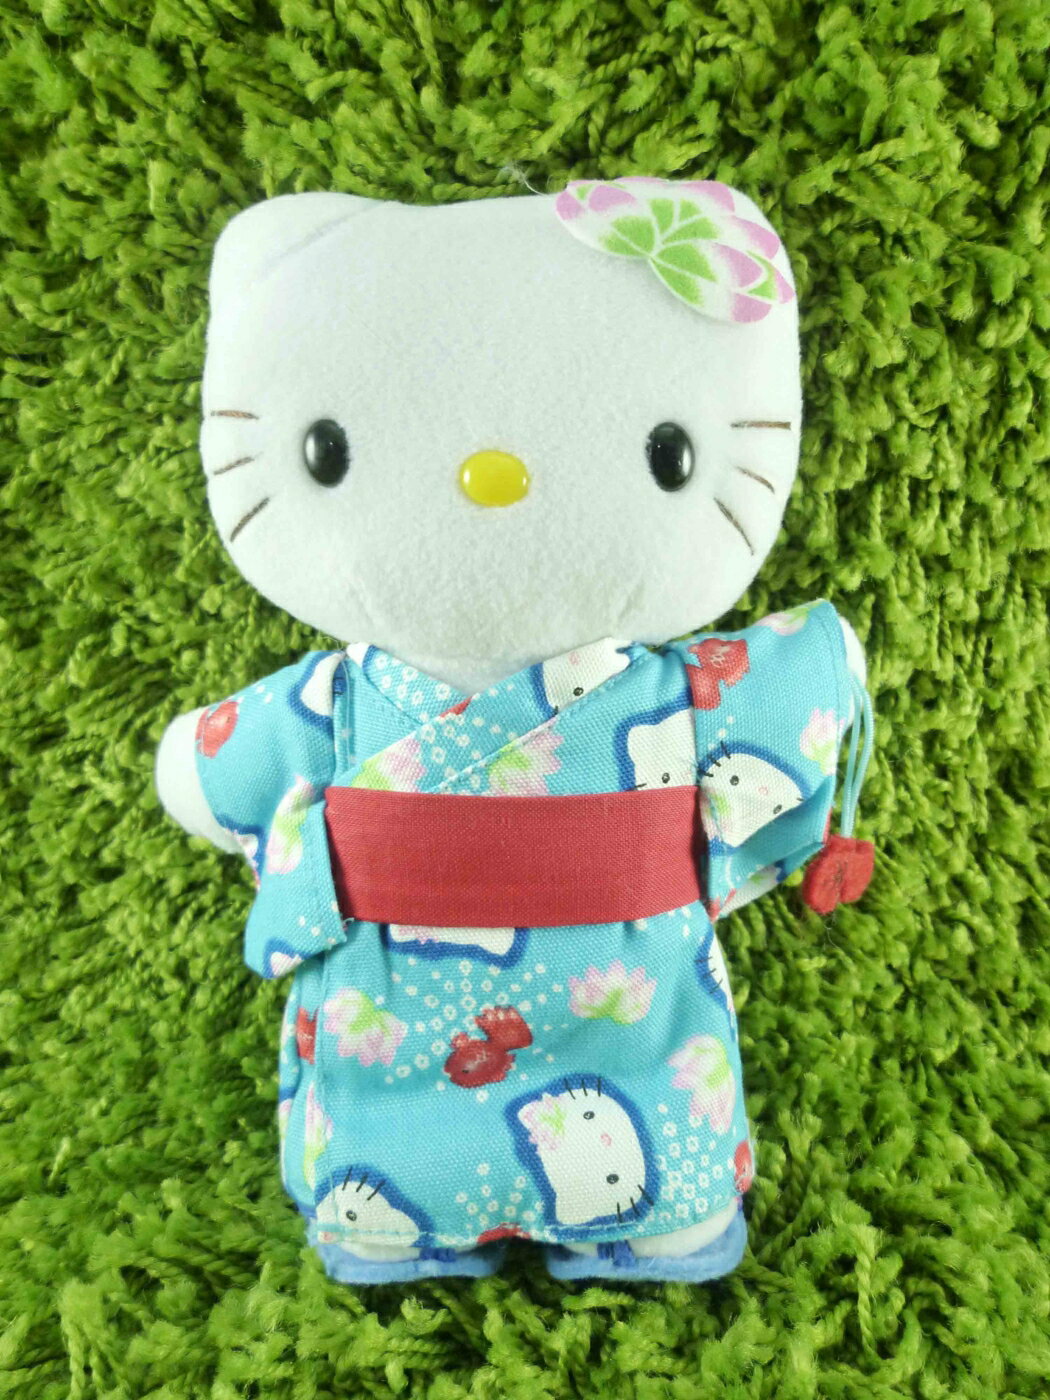 【震撼精品百貨】Hello Kitty 凱蒂貓 KITTY絨毛娃娃-和風服飾-藍色-站姿 震撼日式精品百貨